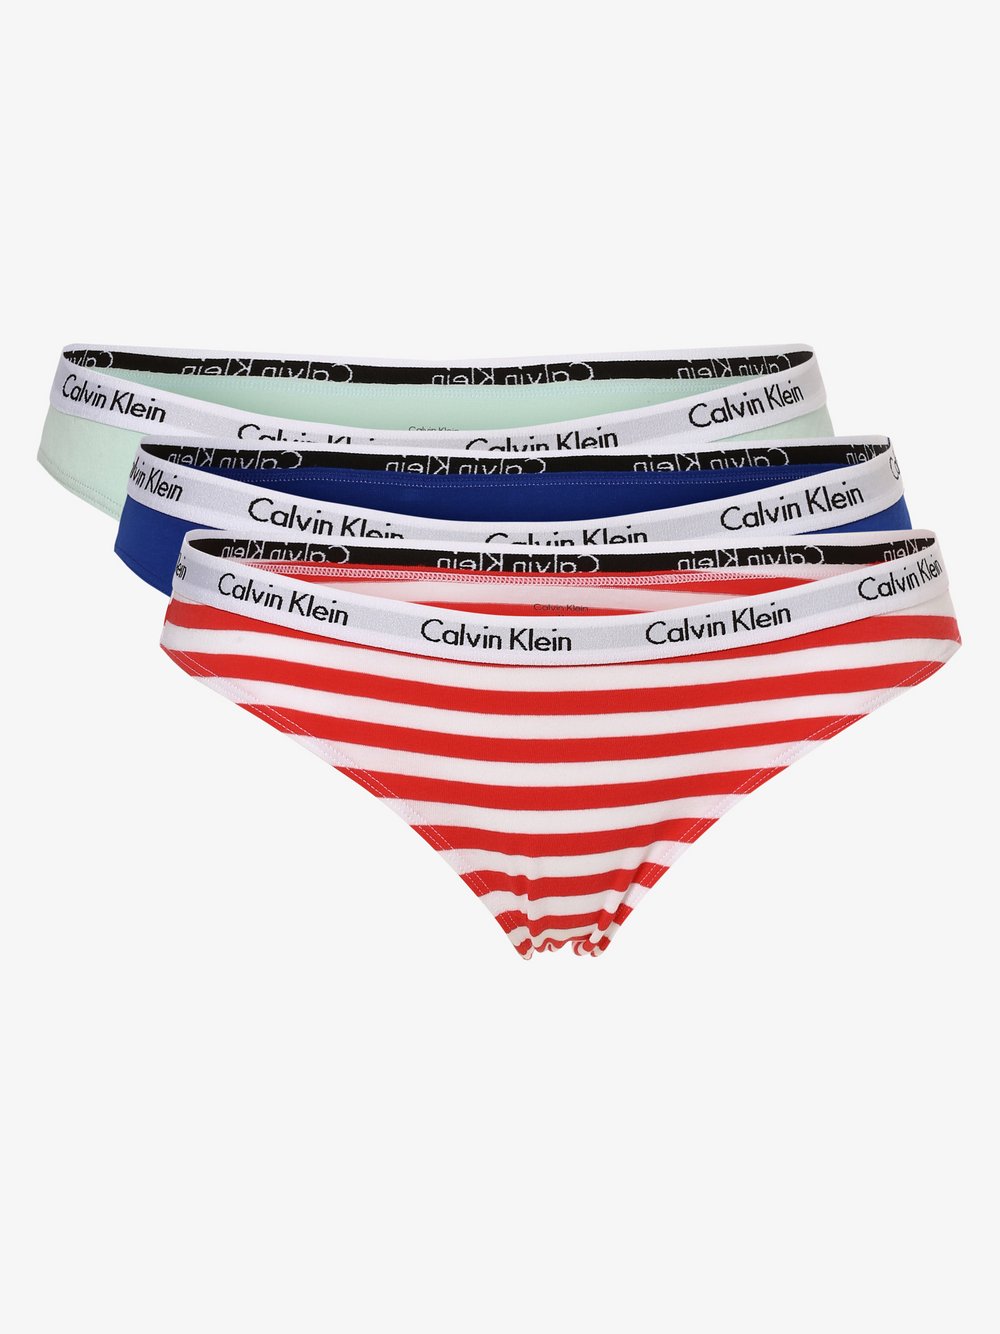 Calvin Klein - Slipy damskie pakowane po 3 szt., wielokolorowy